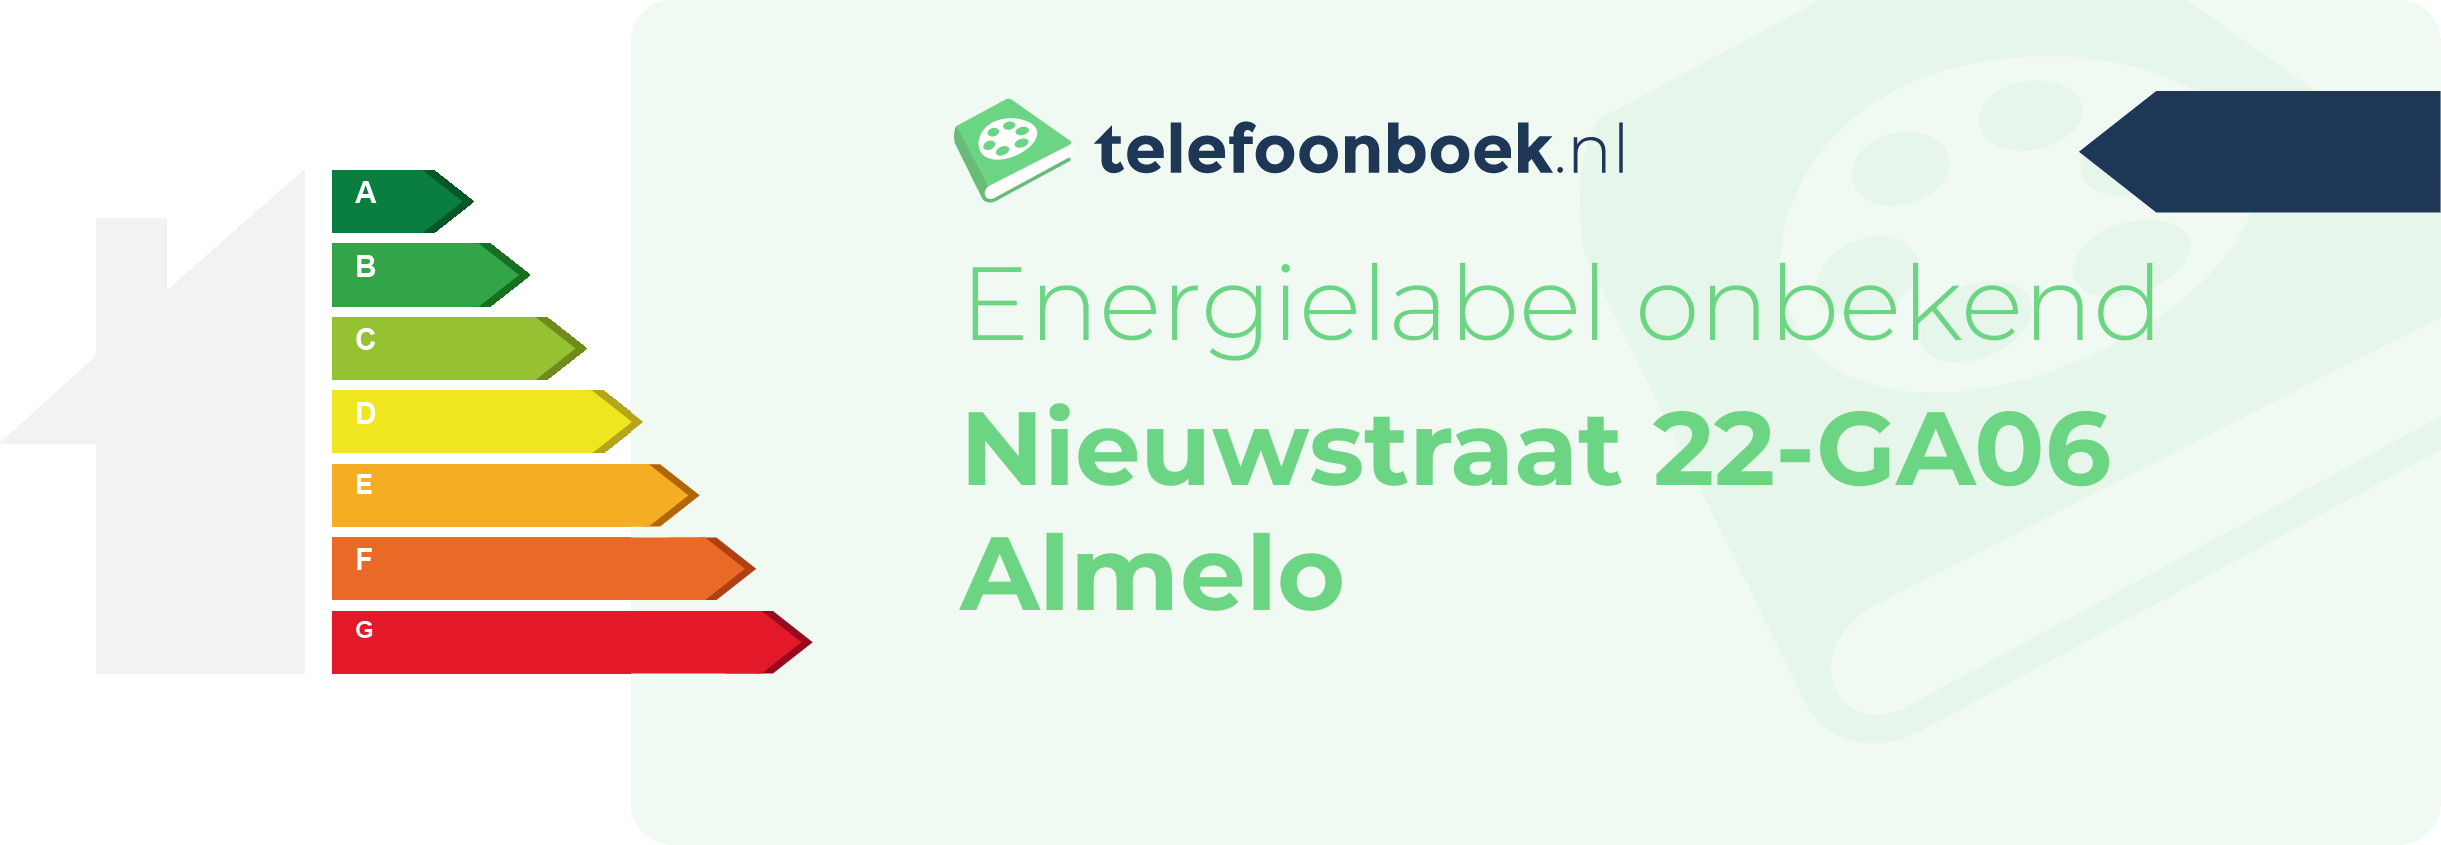 Energielabel Nieuwstraat 22-GA06 Almelo